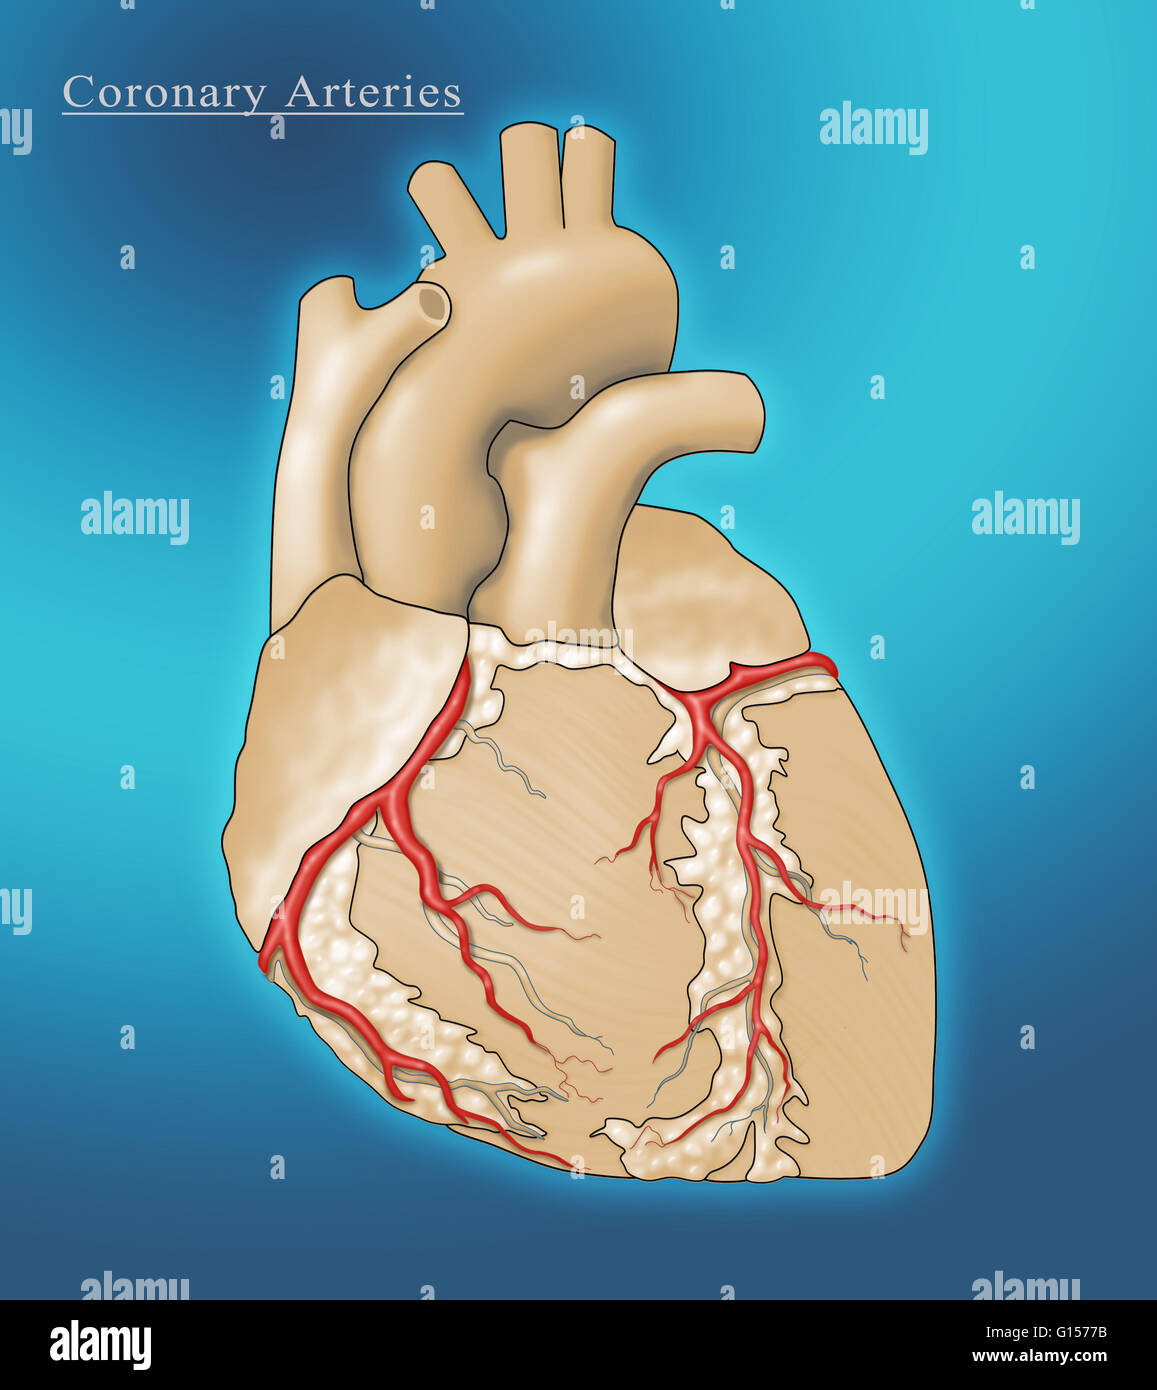 Abbildung des Herzens zeigen die Koronararterien (rot), die den Herzmuskel mit Blut versorgen. Stockfoto